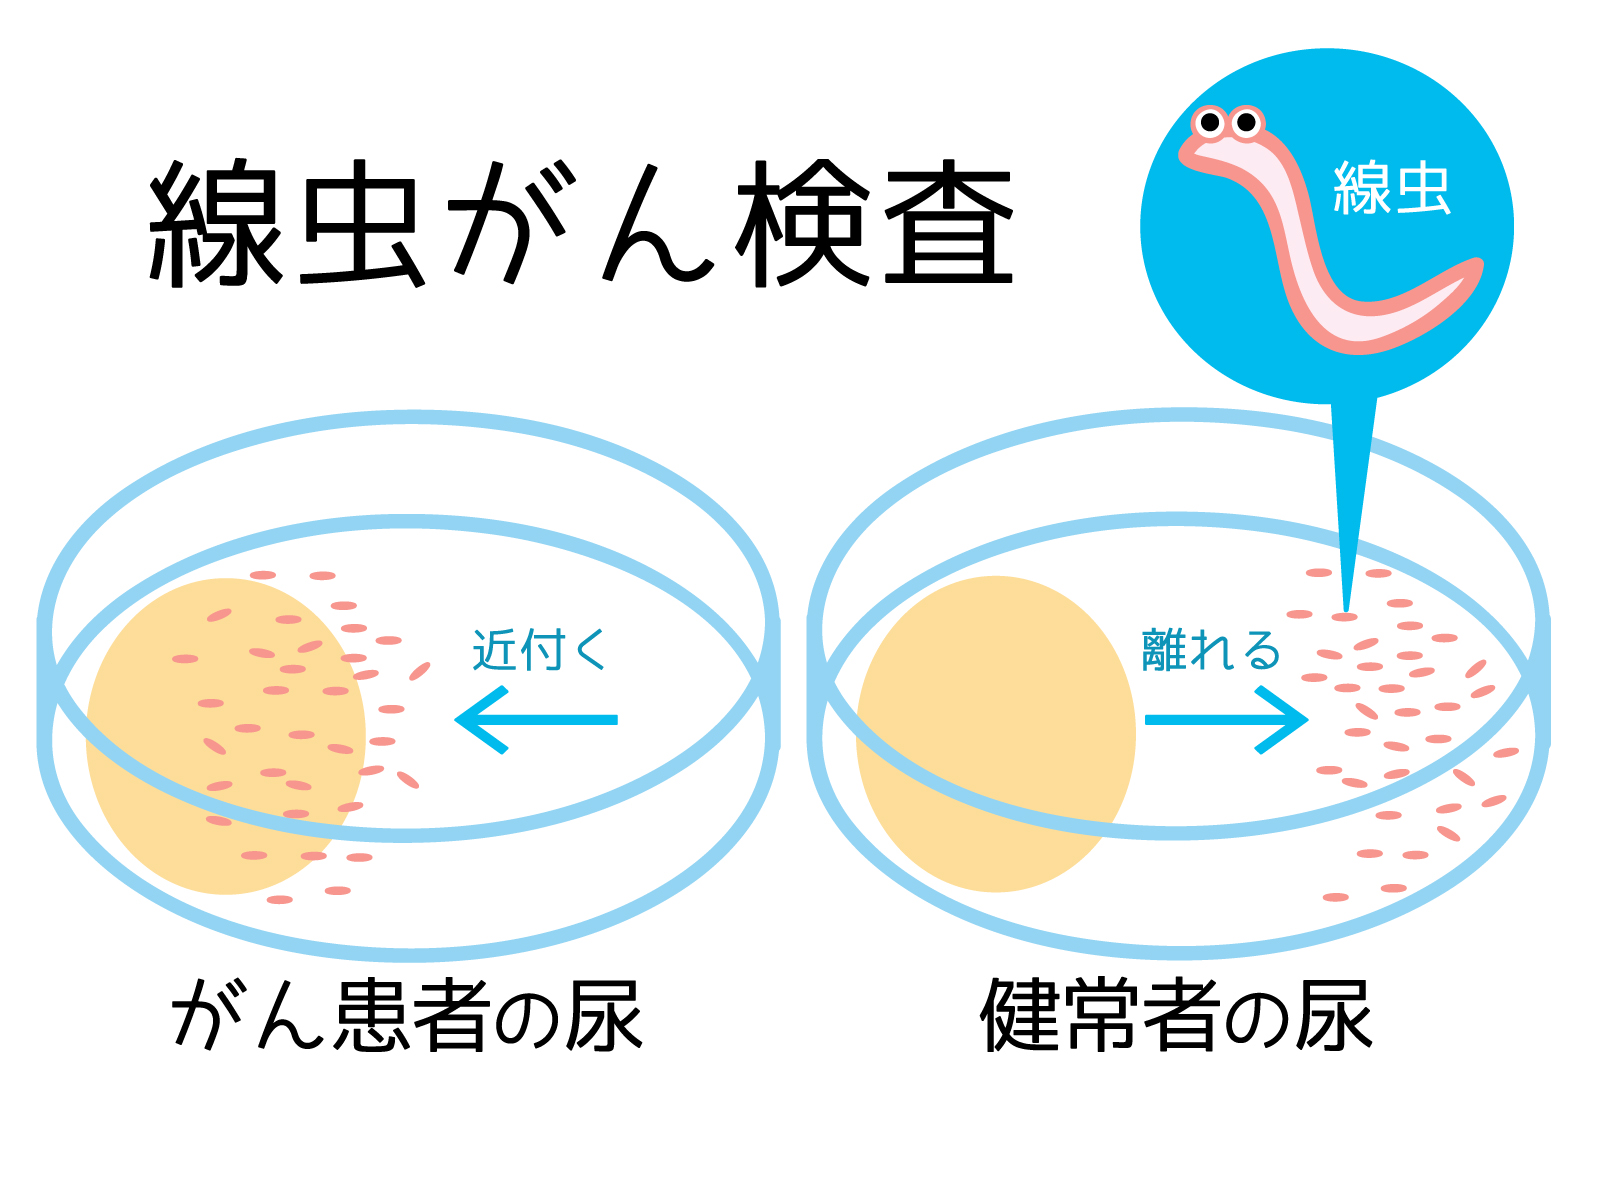 線虫検査(N-NOSE)についての見解です。 - 福岡天神内視鏡クリニックブログ